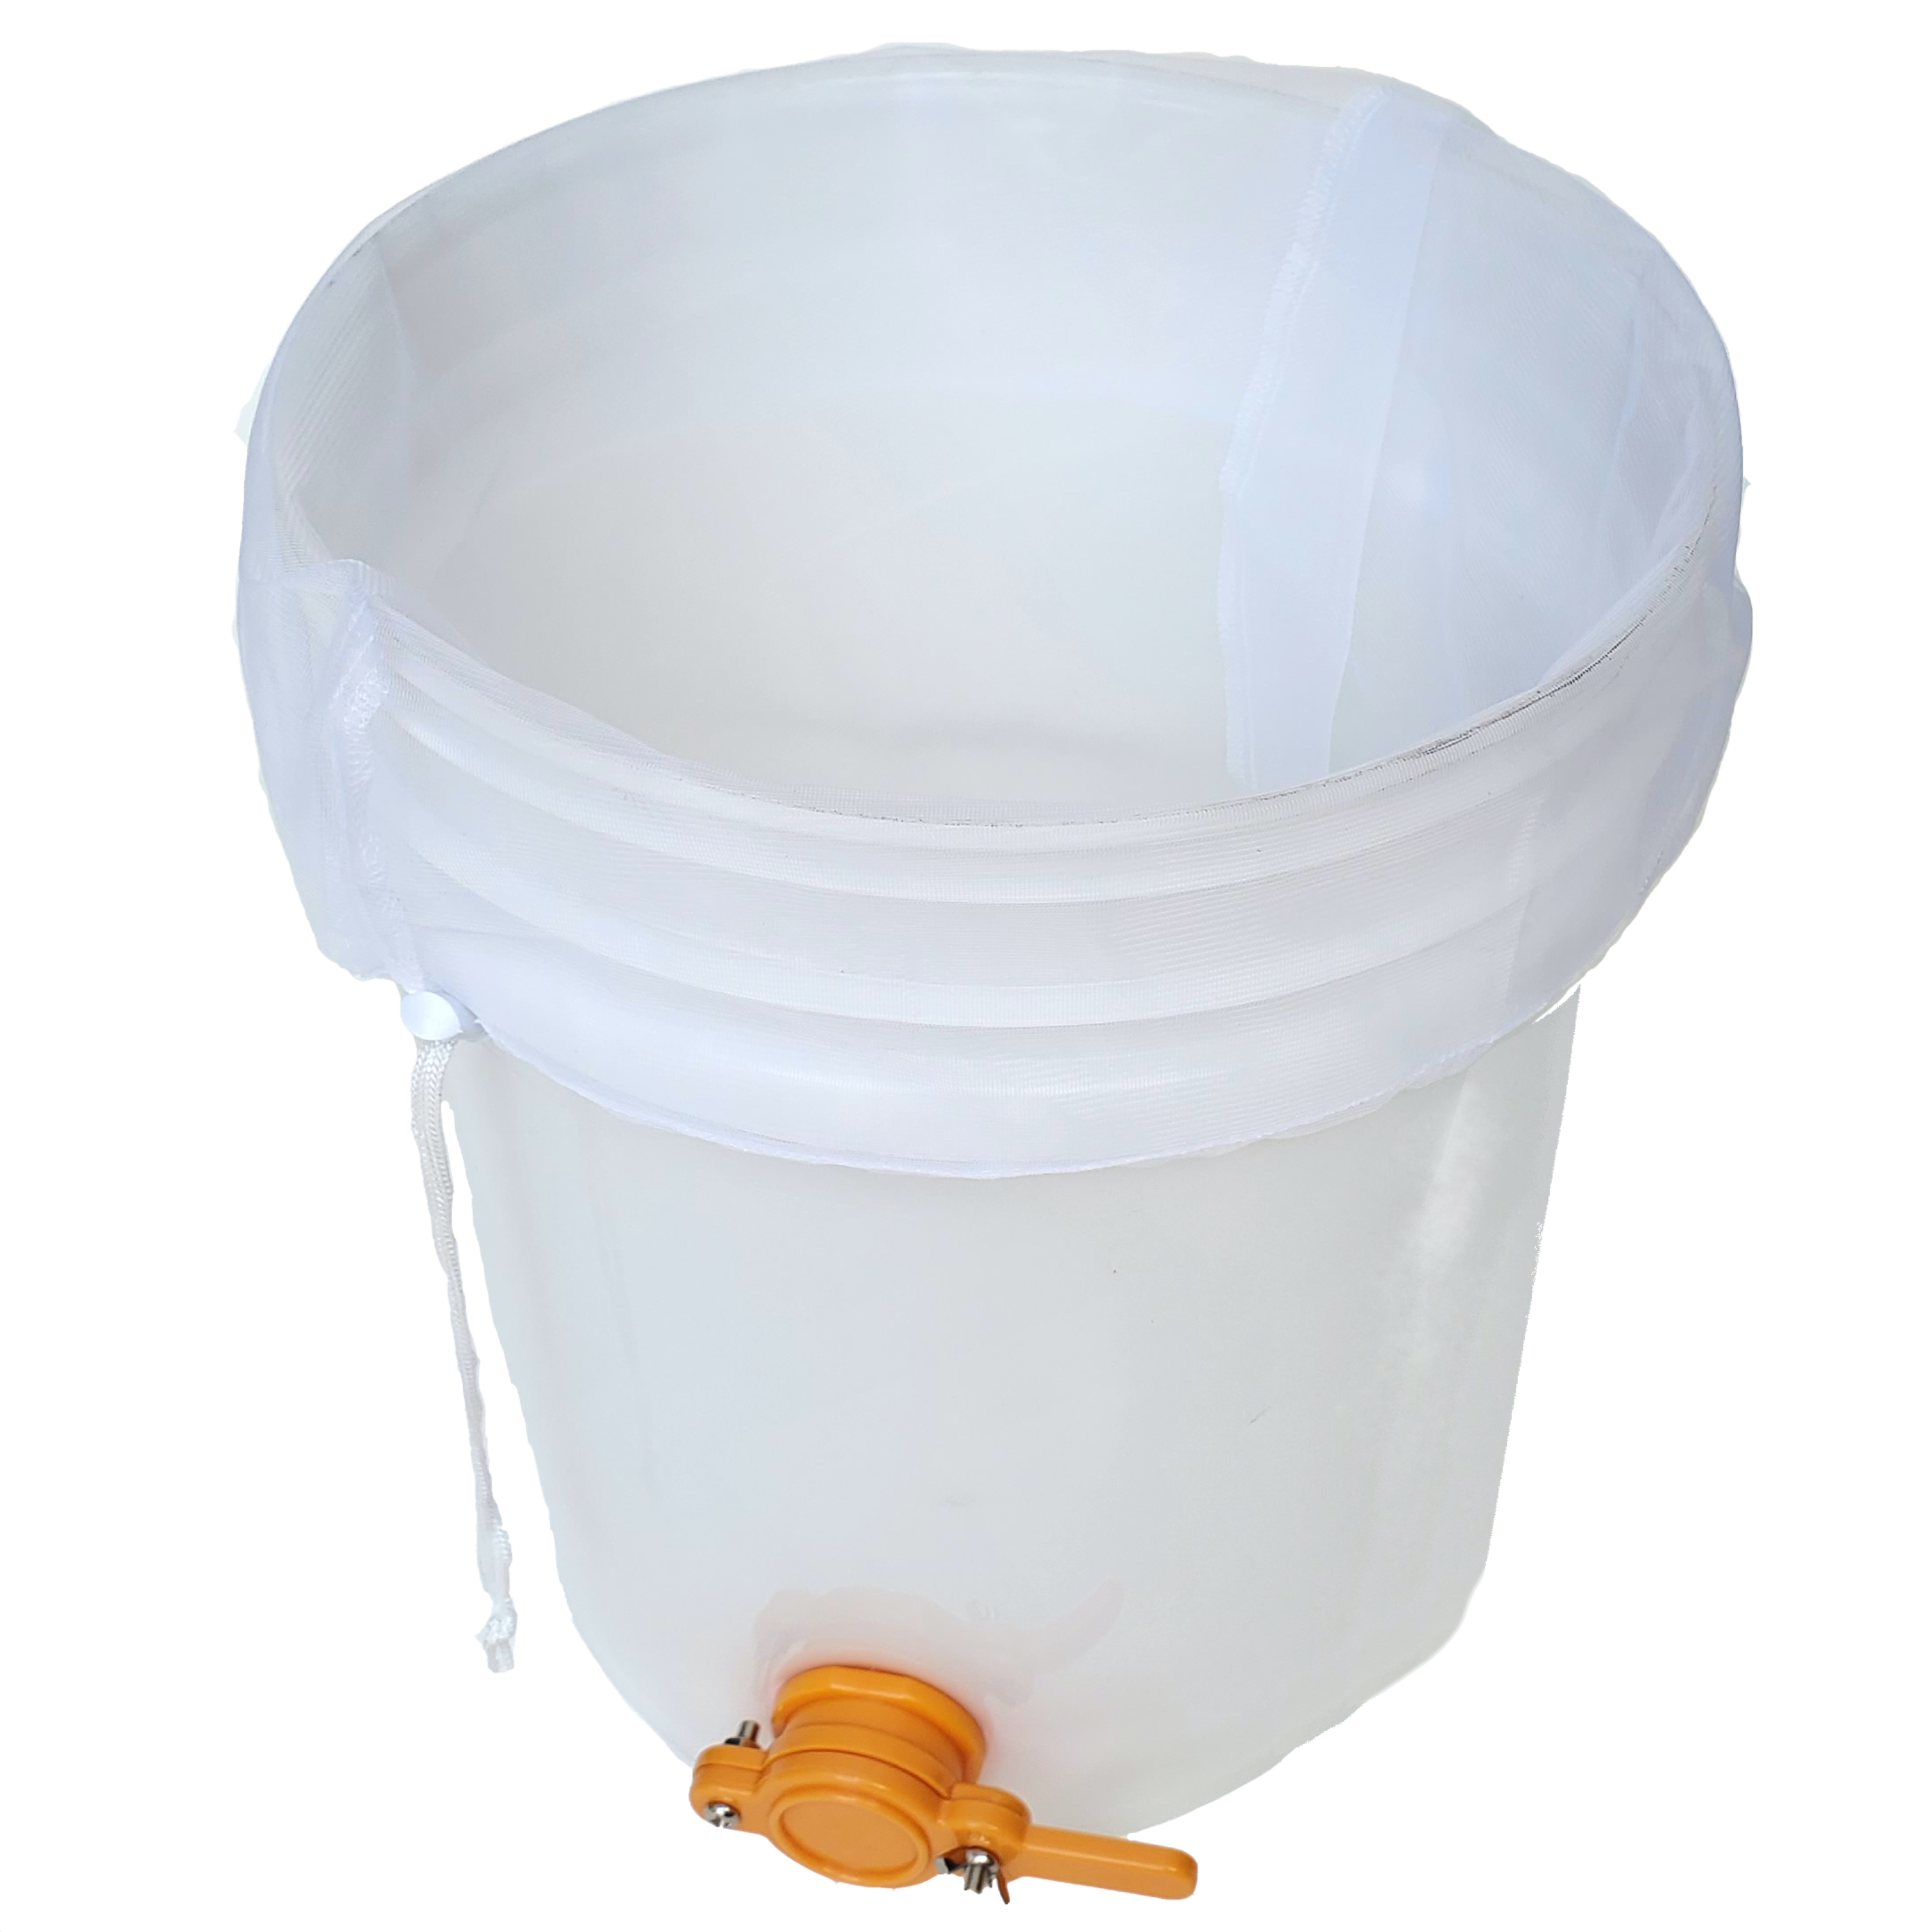 Nylon Honey Strainer Bags for 5 Gallon Bucket - 2 Pack